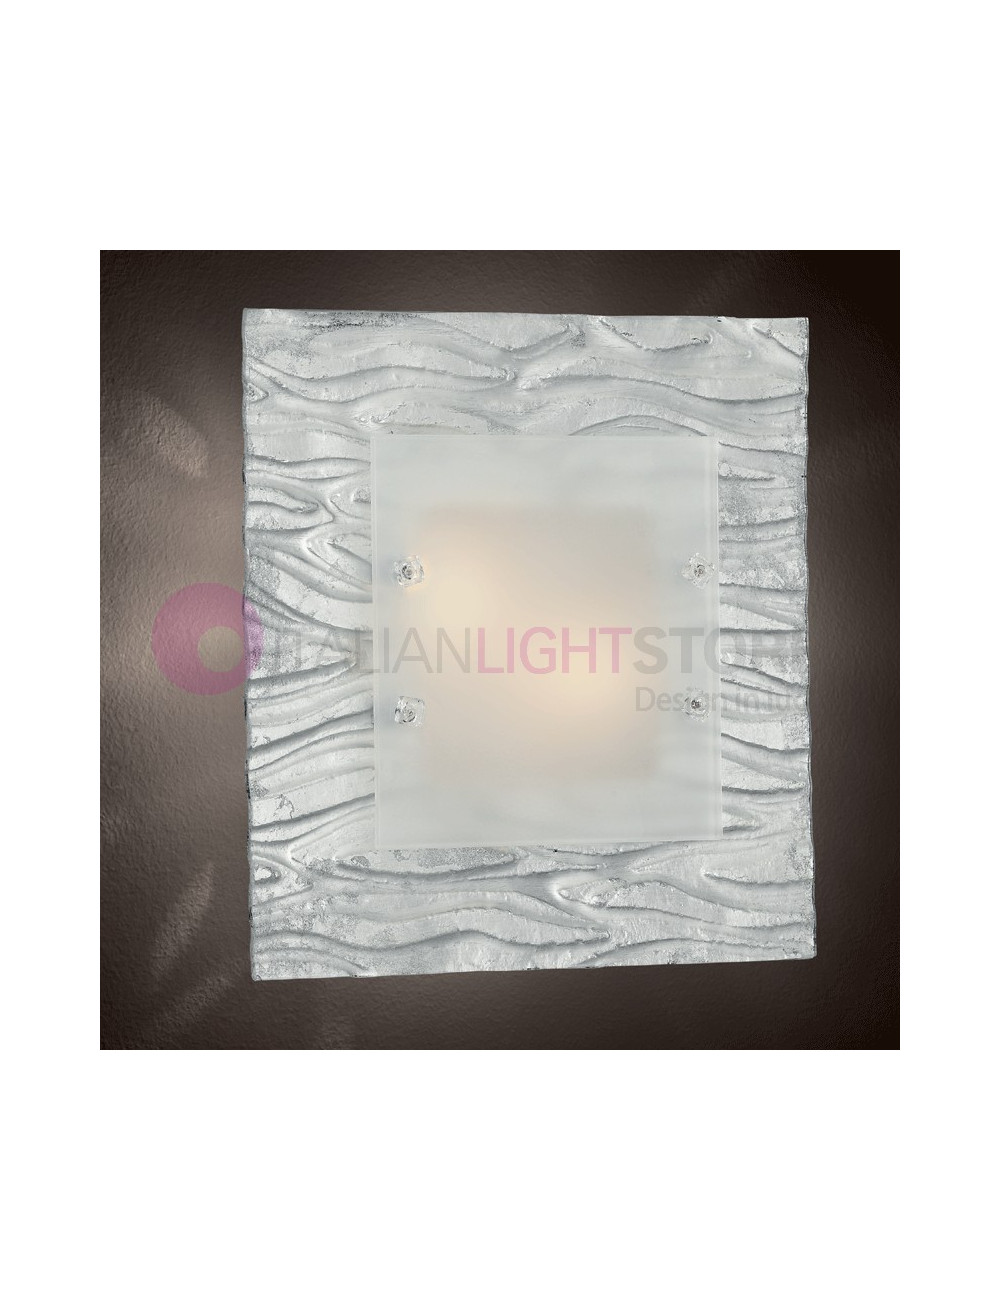 Bark Ceiling light Glass Chandelier Murano 40x40 Familamp